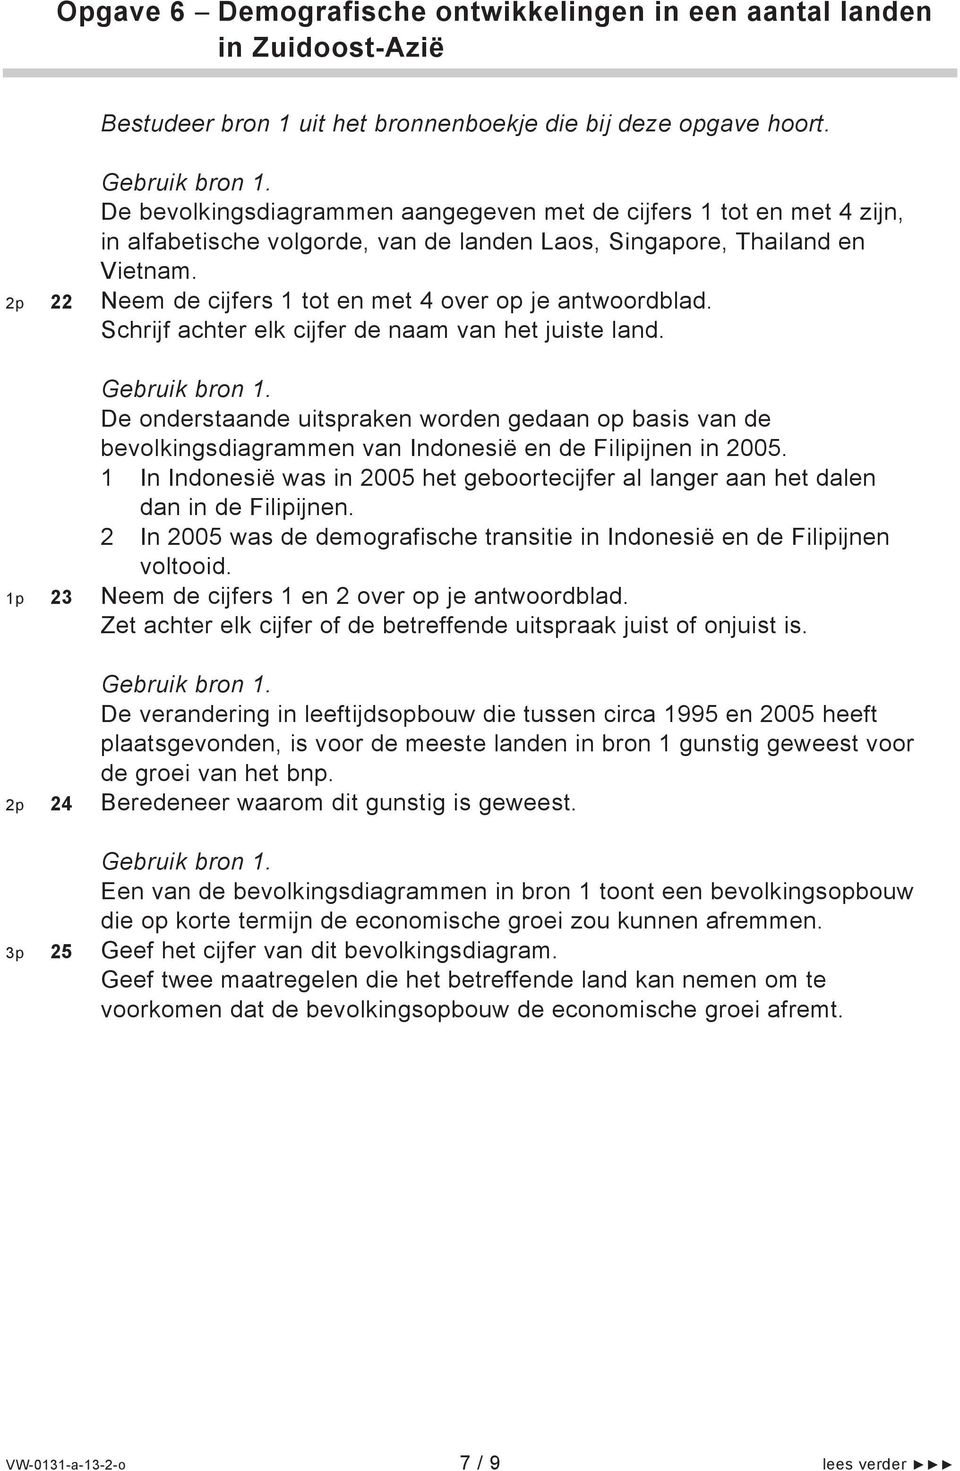 De onderstaande uitspraken worden gedaan op basis van de bevolkingsdiagrammen van Indonesië en de Filipijnen in 2005.